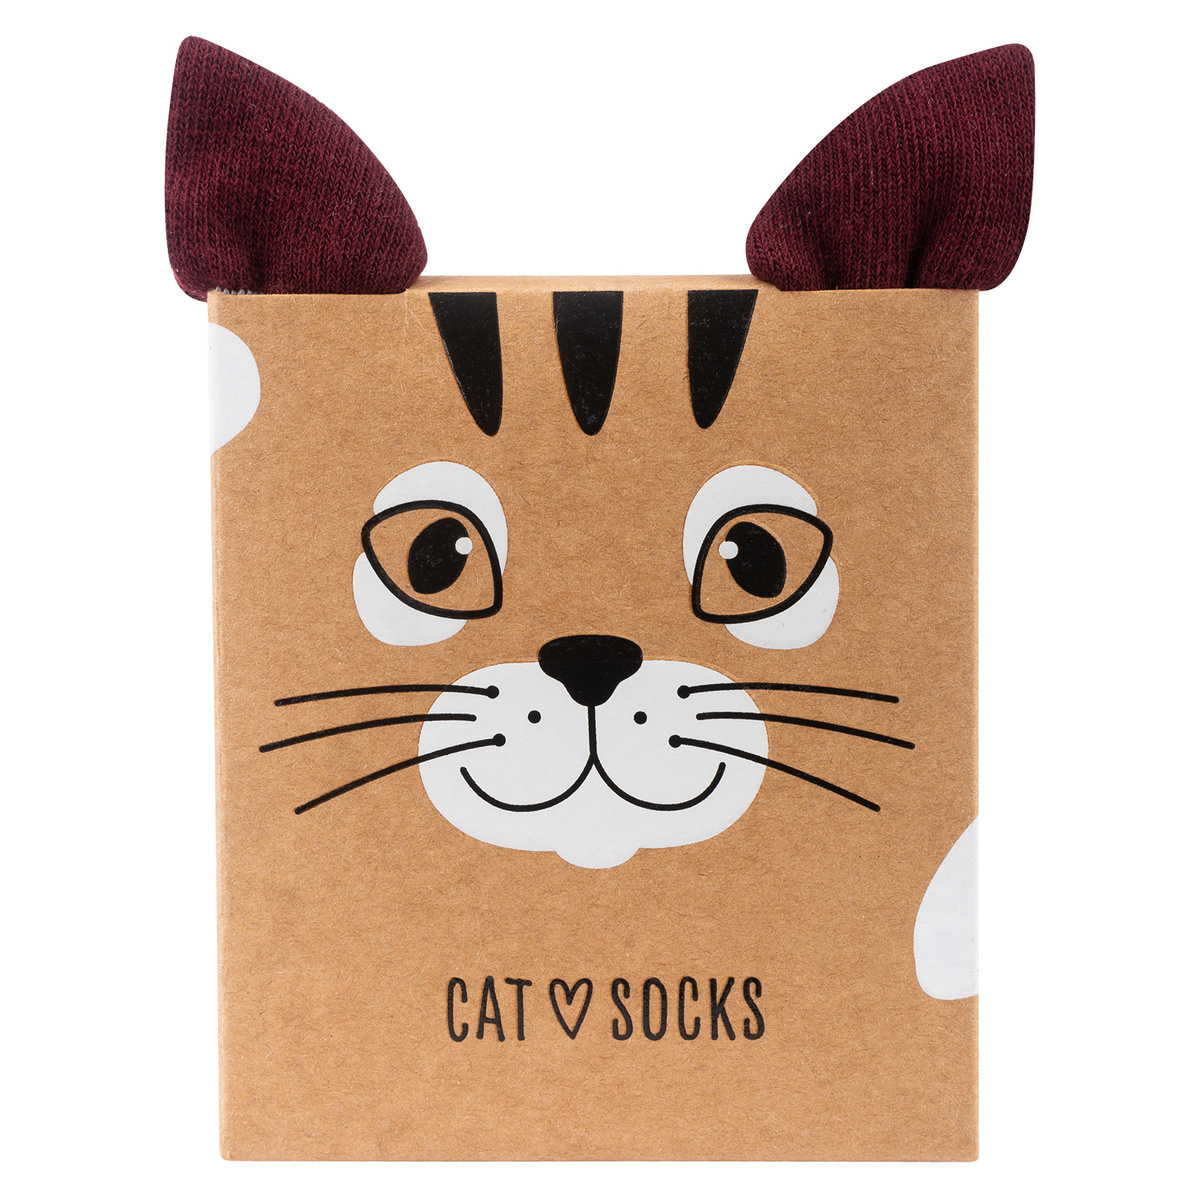 Women's Socks, Men's SOXO, Cat in a Box, fun gift idea